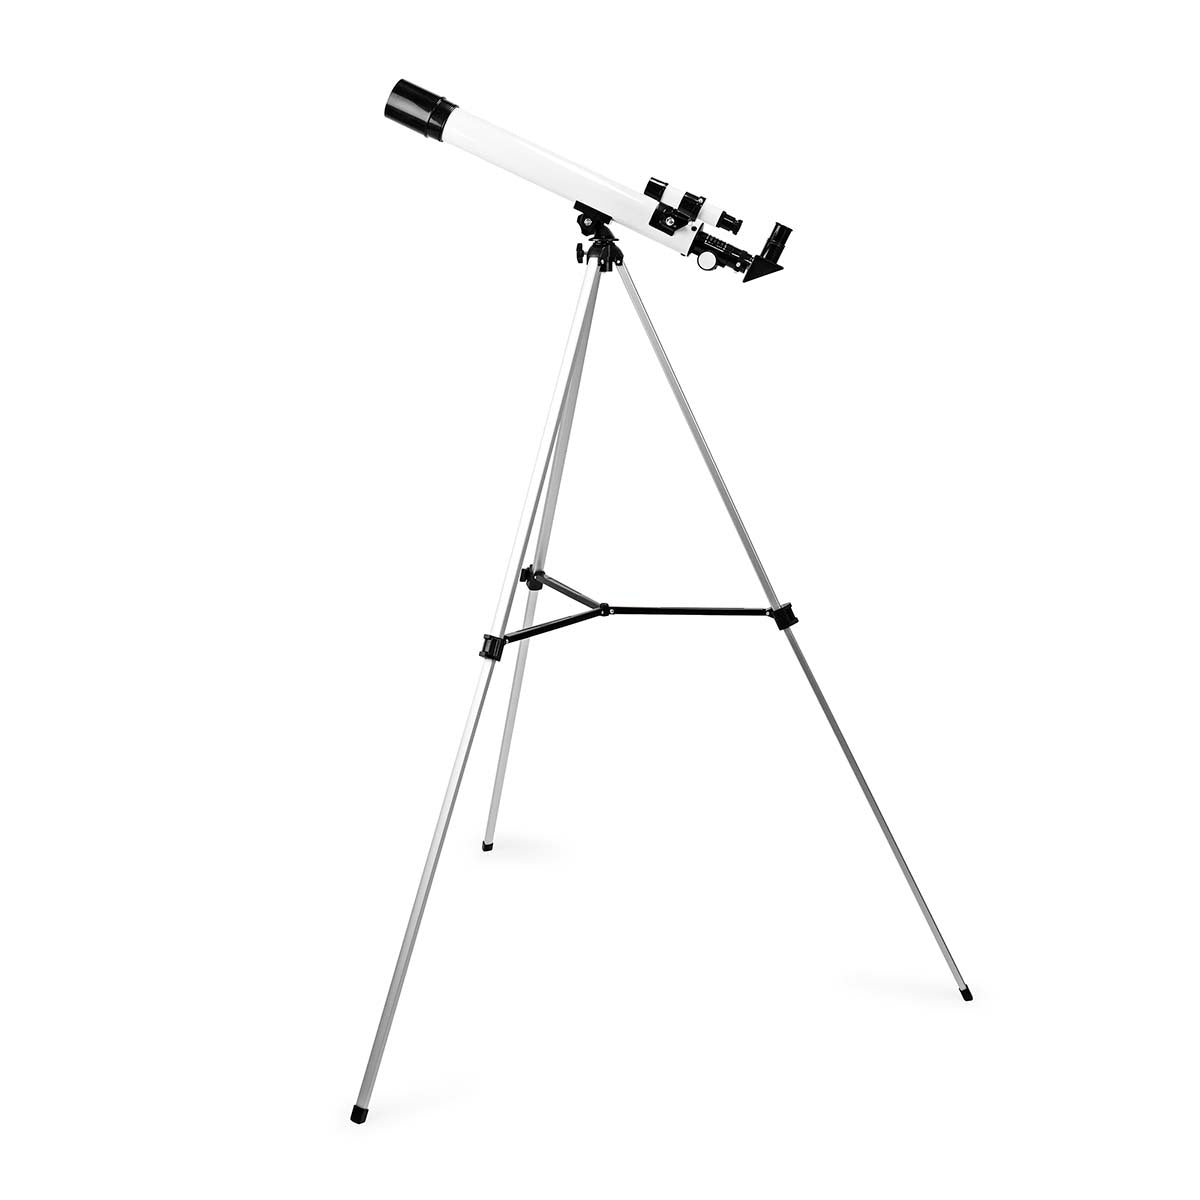 Teleskop | Blende: 50 mm | Brennweite: 600 mm | Finderscope: 5 x 24 | max. Arbeitshöhe: 125 cm | Tripod | Schwarz / Weiss